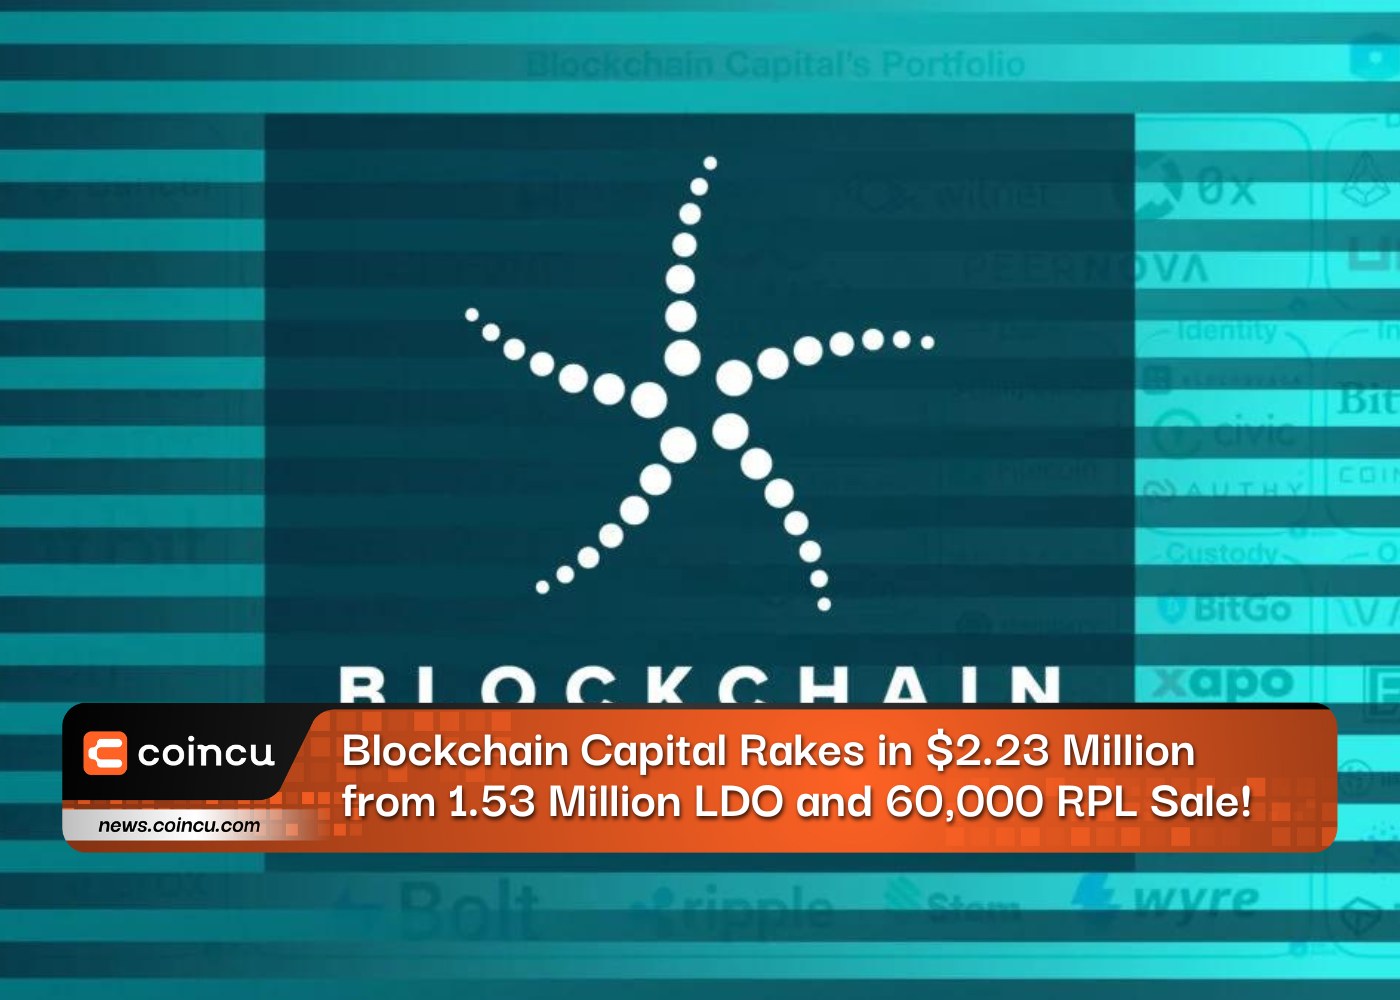 Blockchain Capital Rakes in 2.23 Million